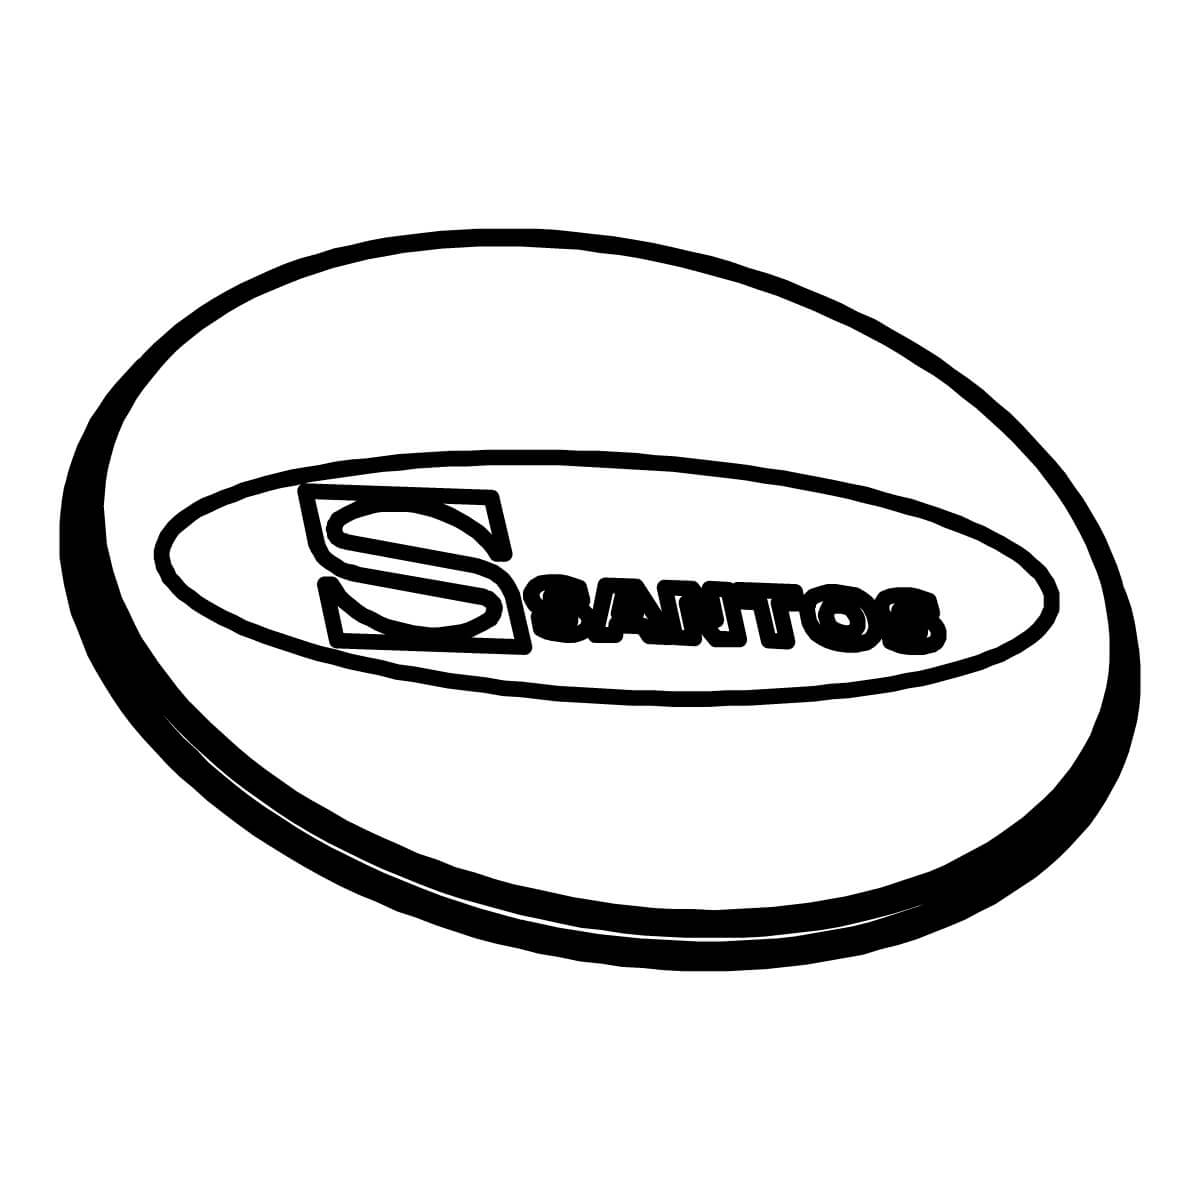 Bowl cover, transparent - Santos #11 (11160)